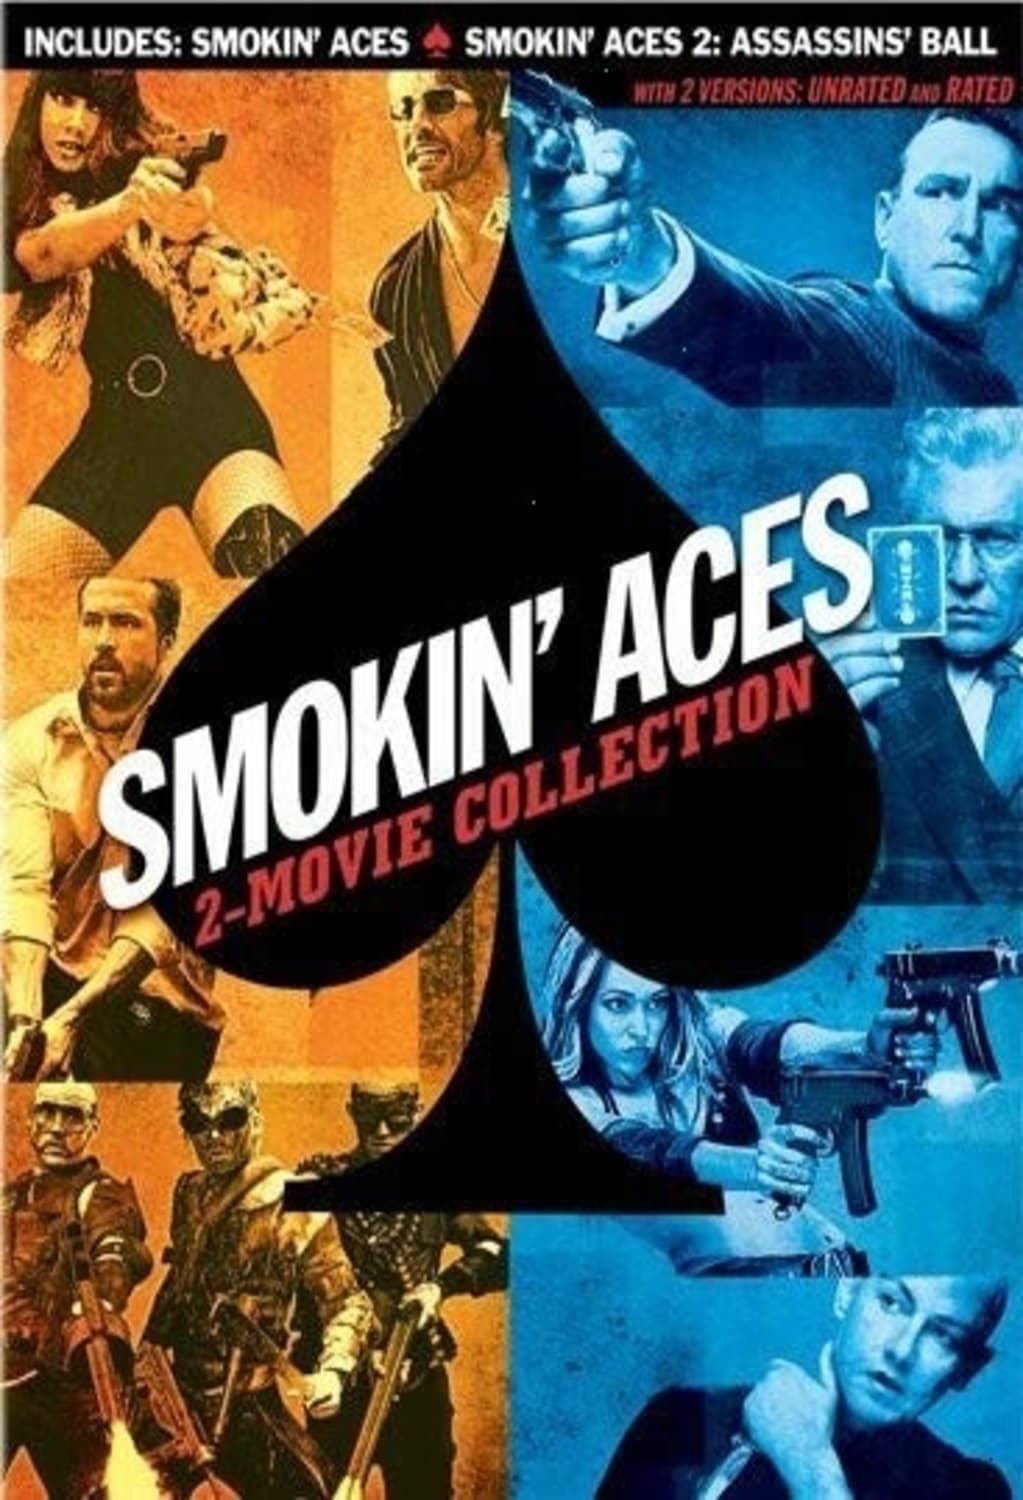 Smokin’ Aces: 2-Movie Collection (DVD) on MovieShack